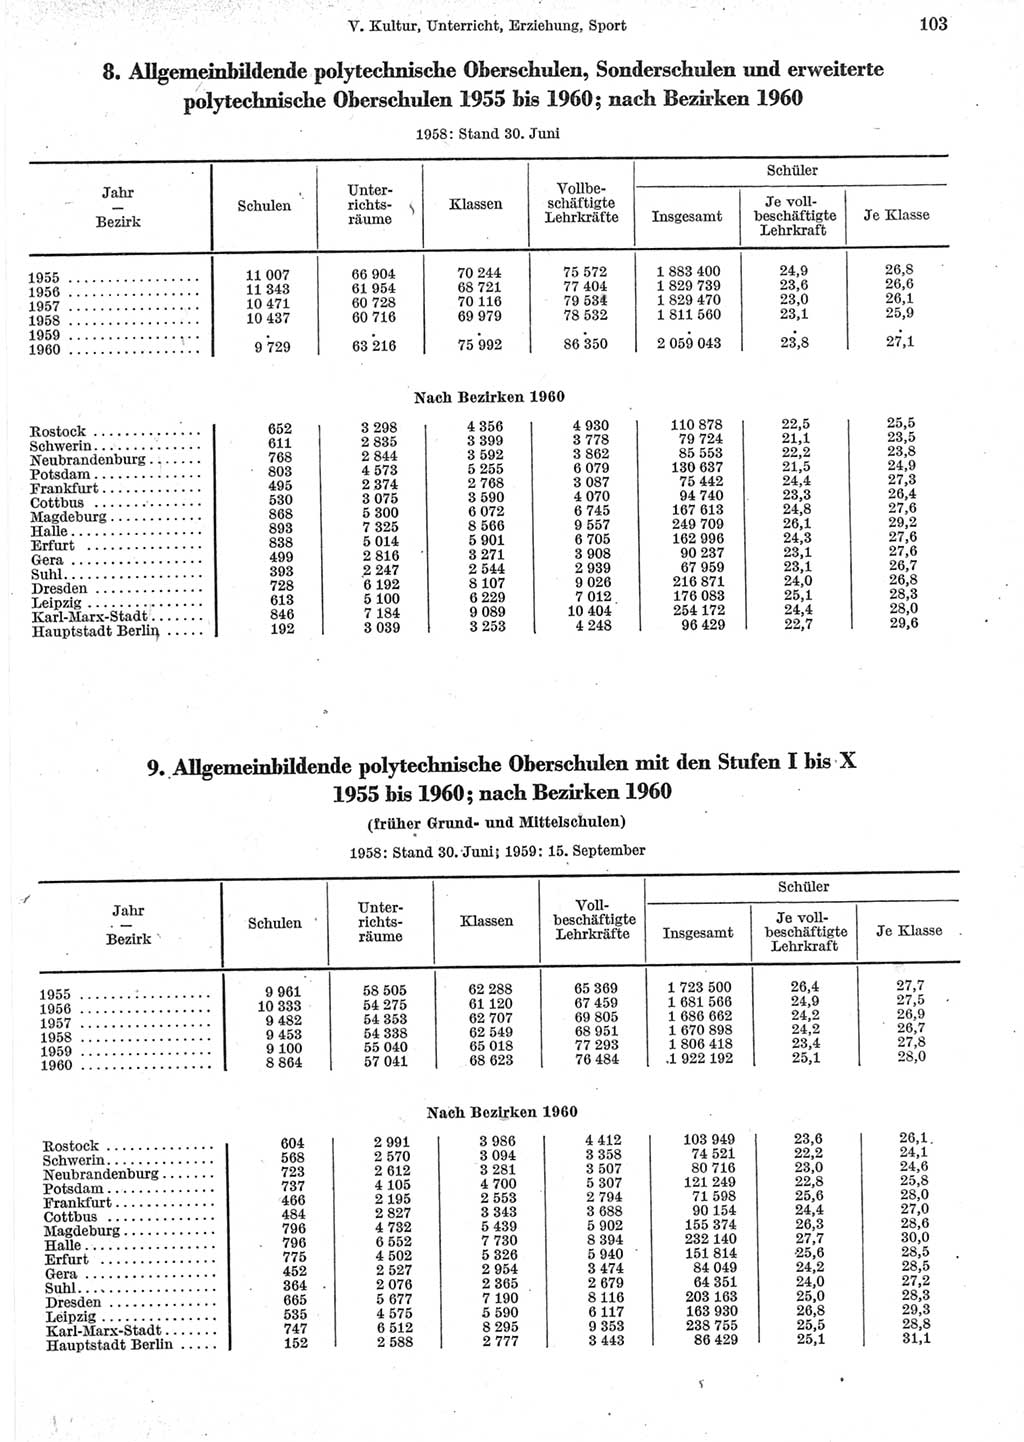 Statistisches Jahrbuch der Deutschen Demokratischen Republik (DDR) 1962, Seite 103 (Stat. Jb. DDR 1962, S. 103)